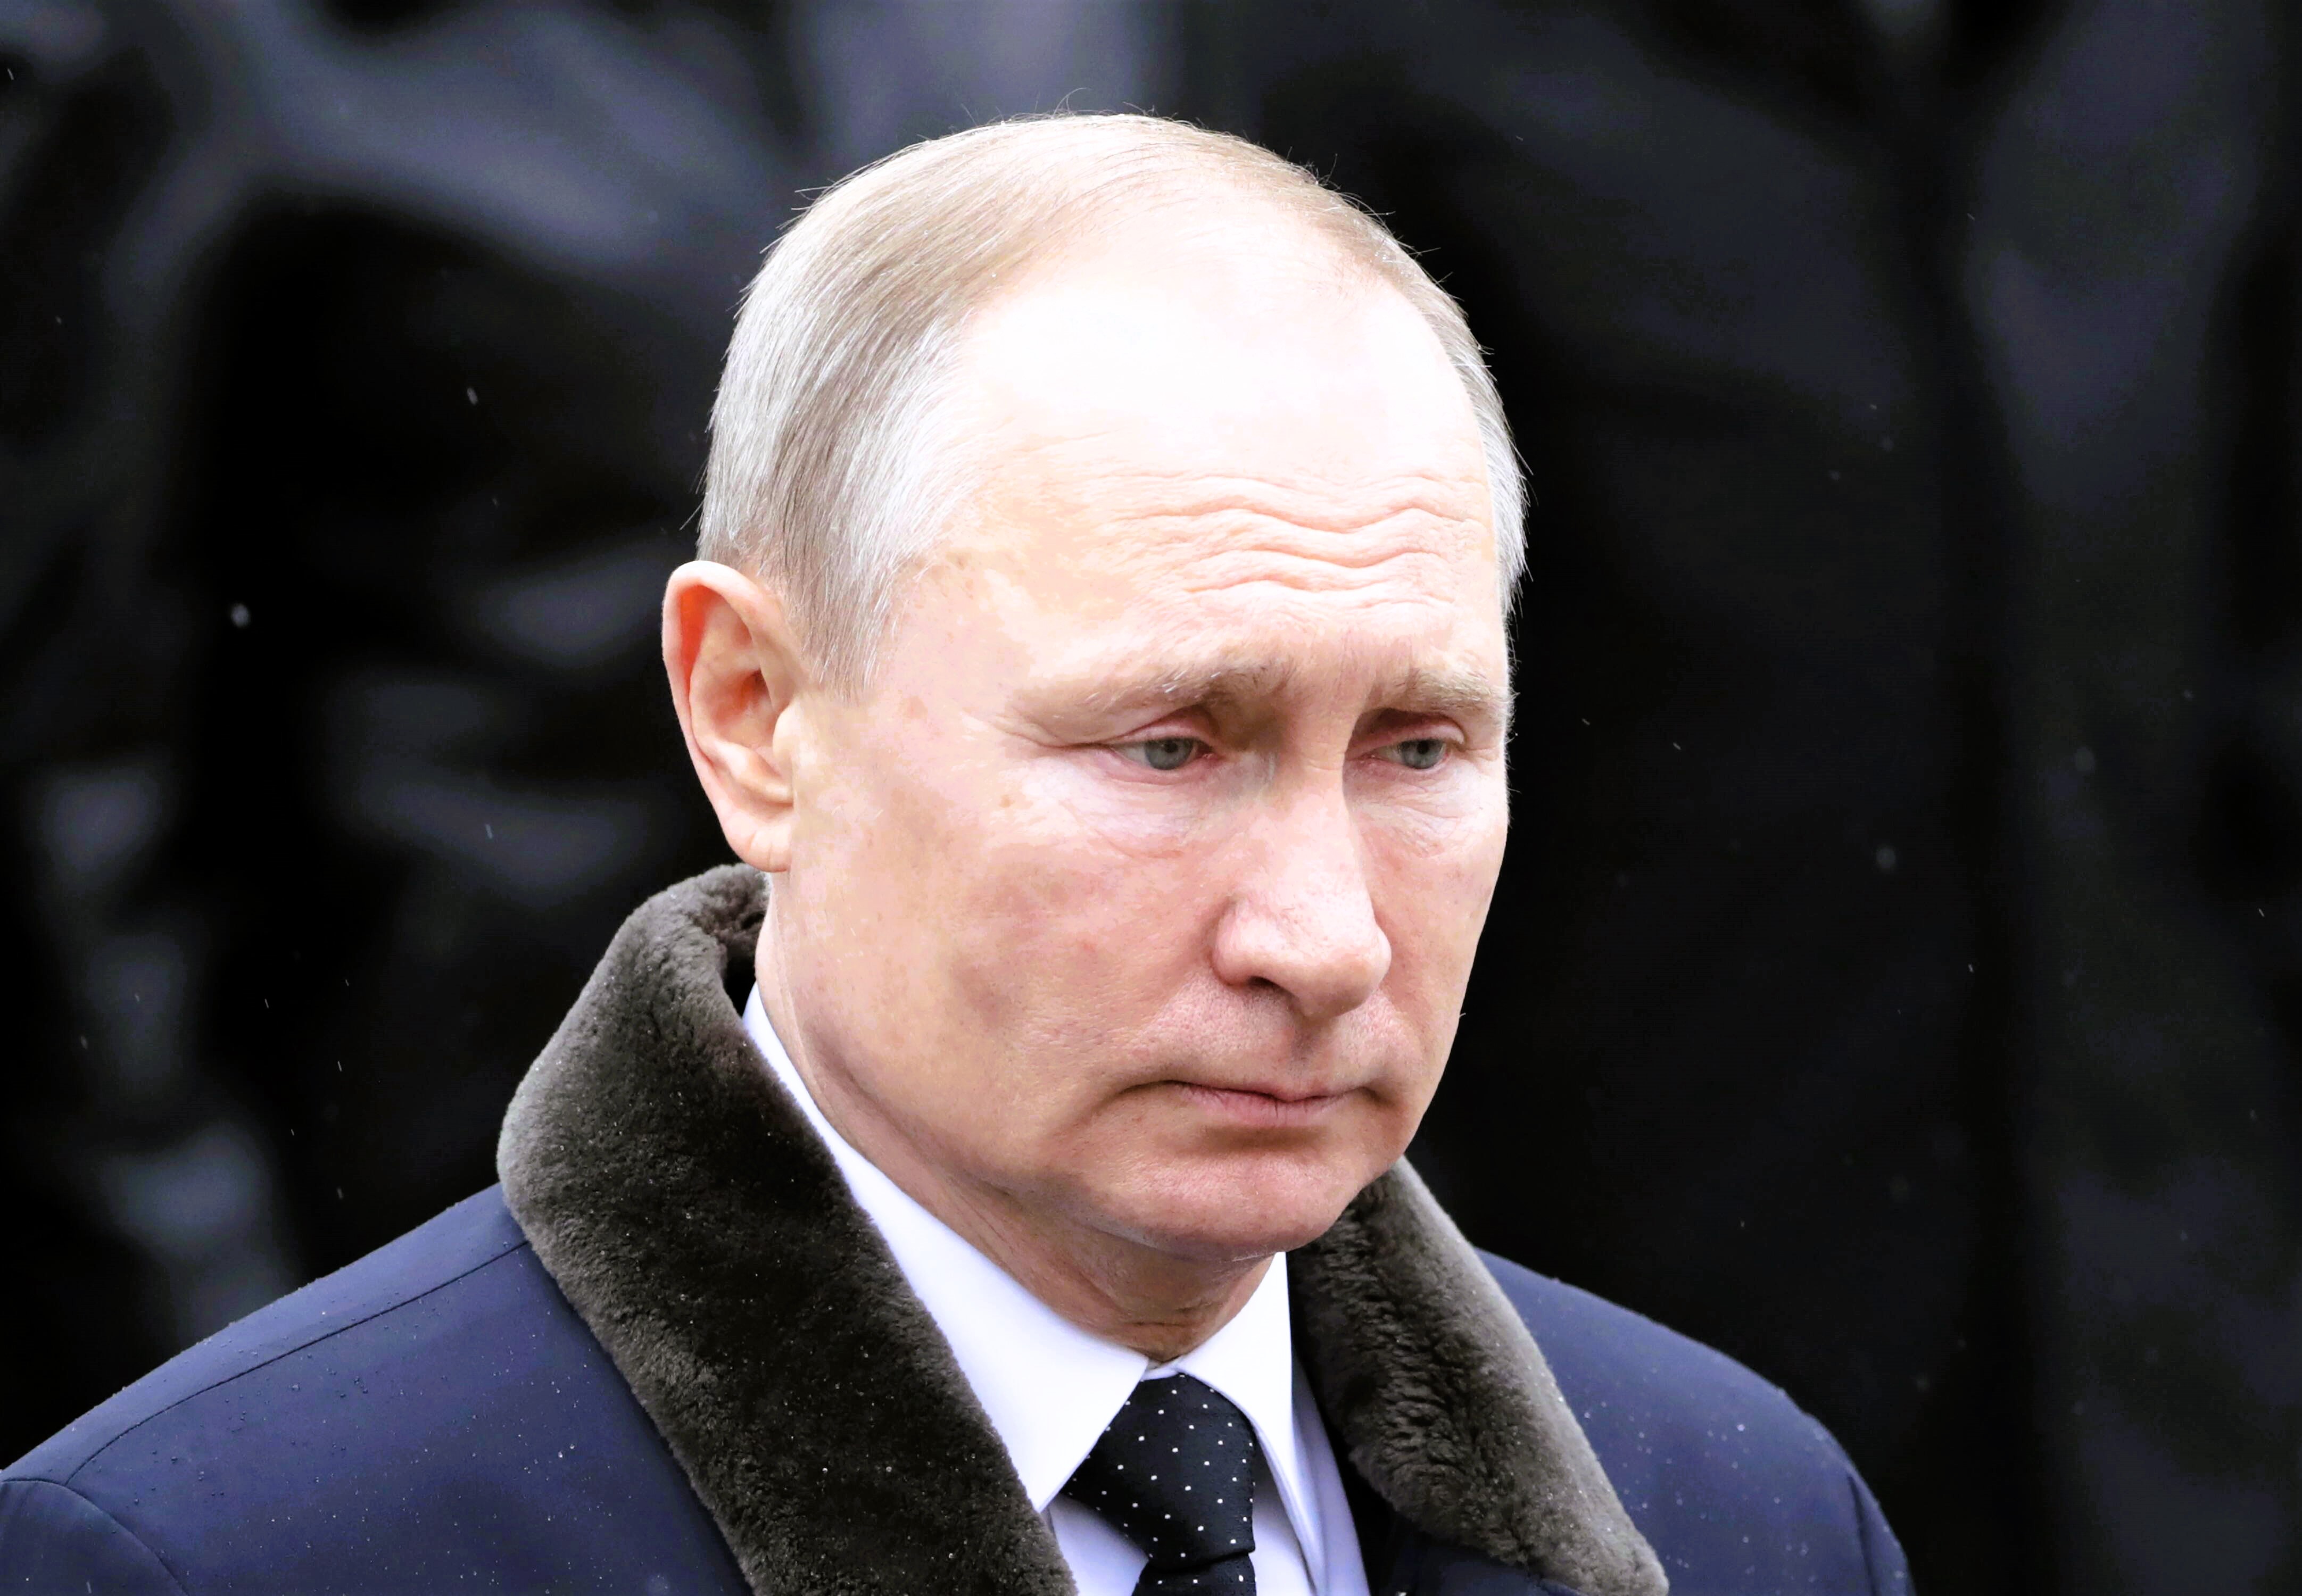 Grab von Putins Eltern geschändet! Protest gegen Putin wird ekelhaft